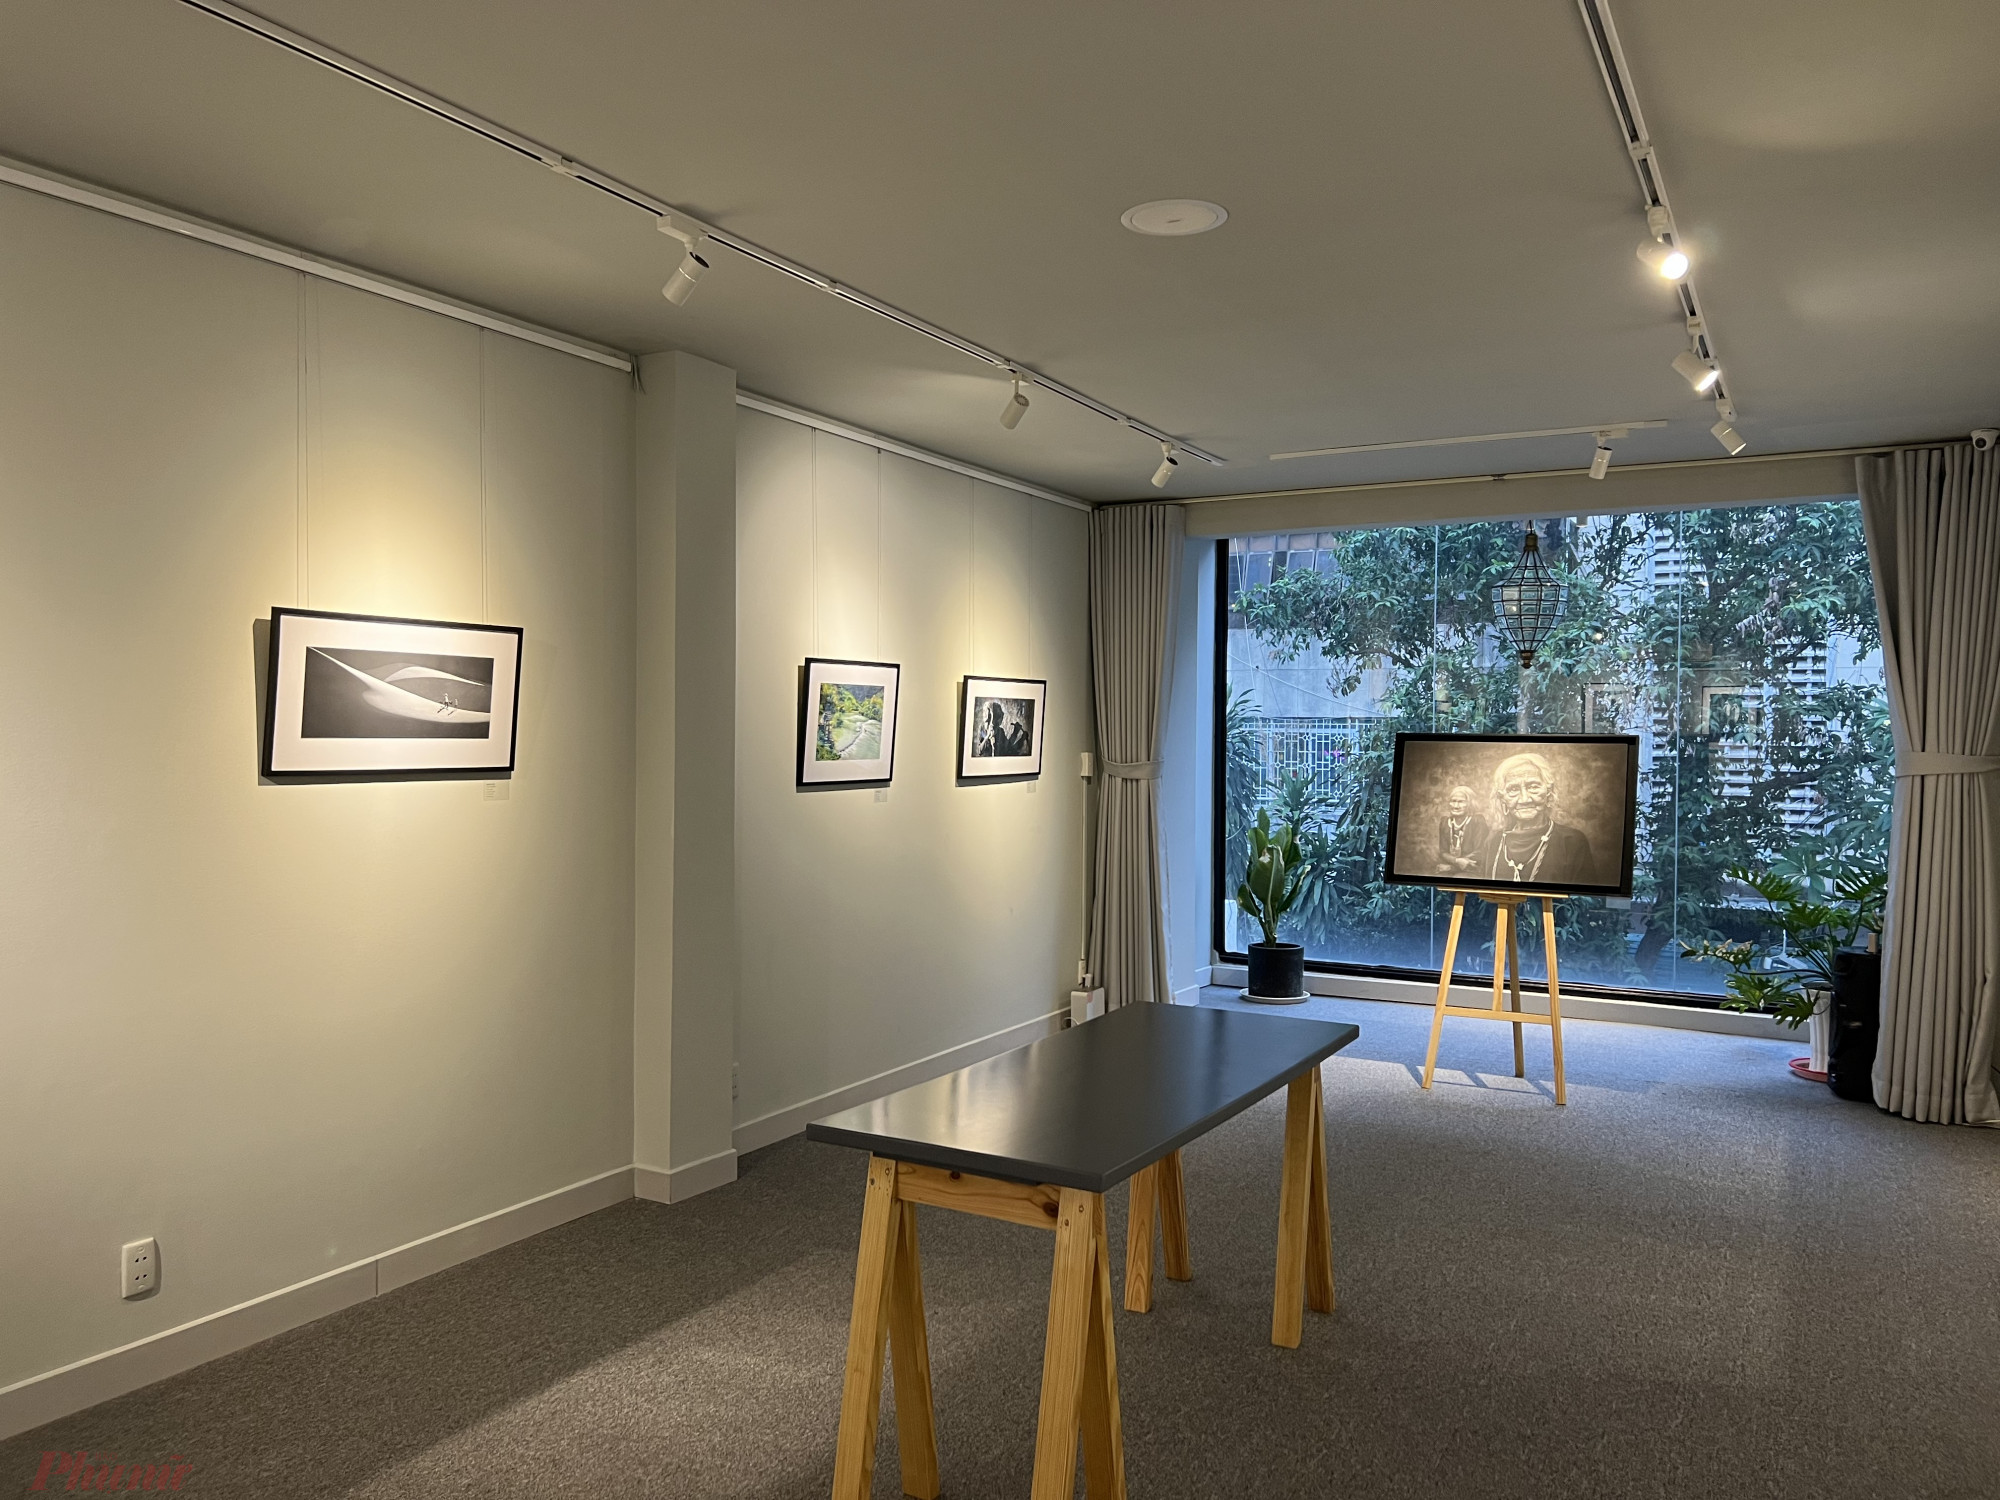 Tại triển lãm có 3 không gian khác nhau trưng bày theo từng nhóm ảnh, thuận tiện để người xem theo dõi. 